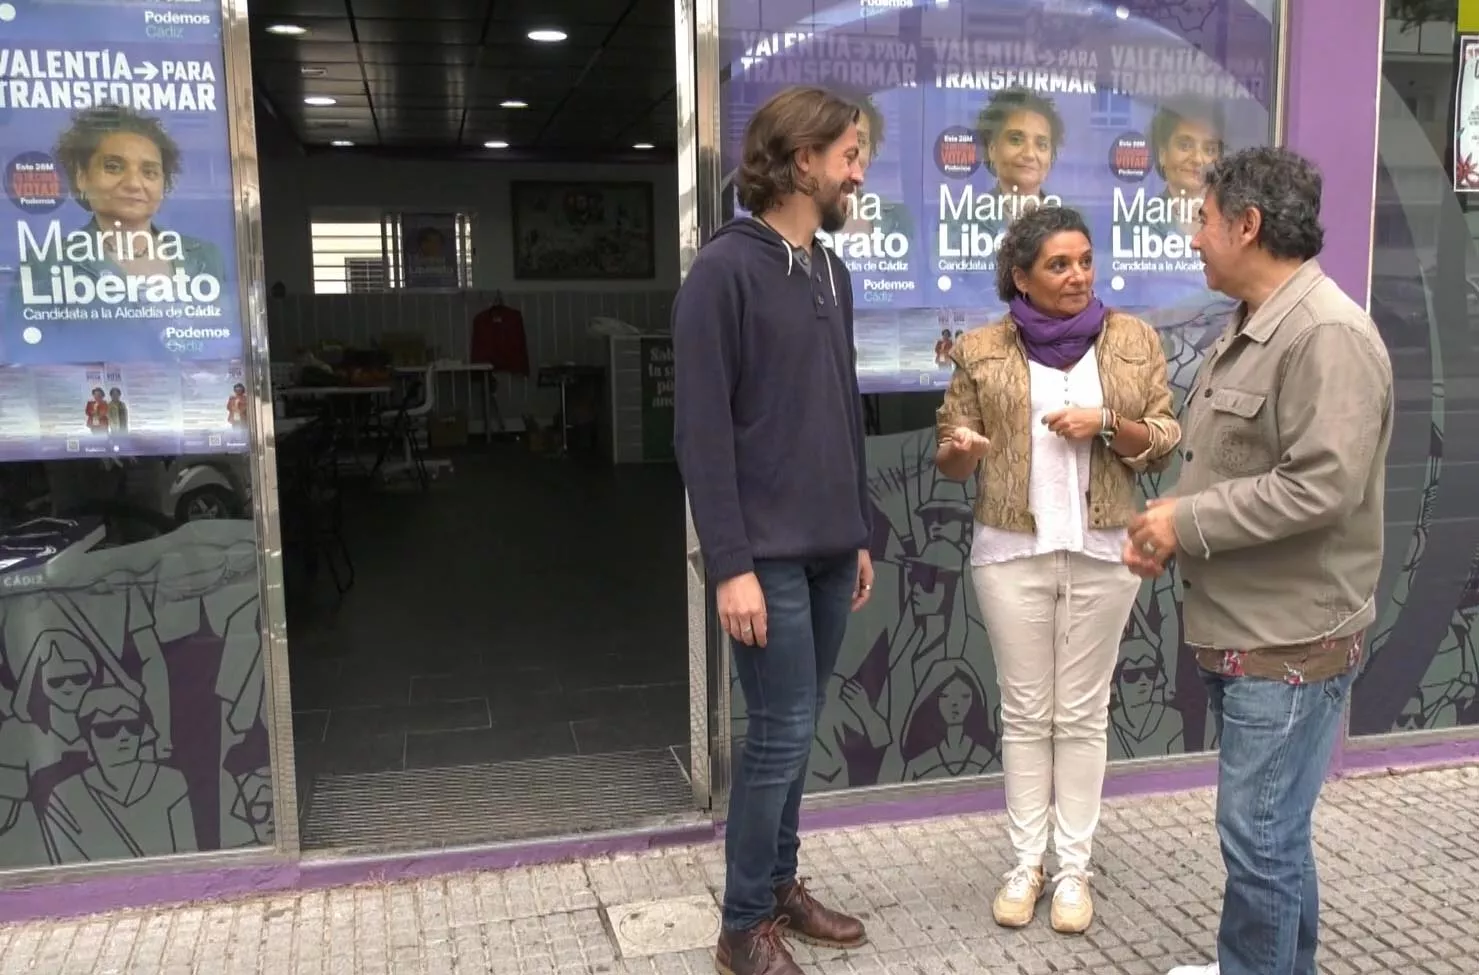 La aspirante a la alcaldía de Podemos, Marina Liberato, junto a otros miembros de la candidatura en la puerta de la sede de la formación